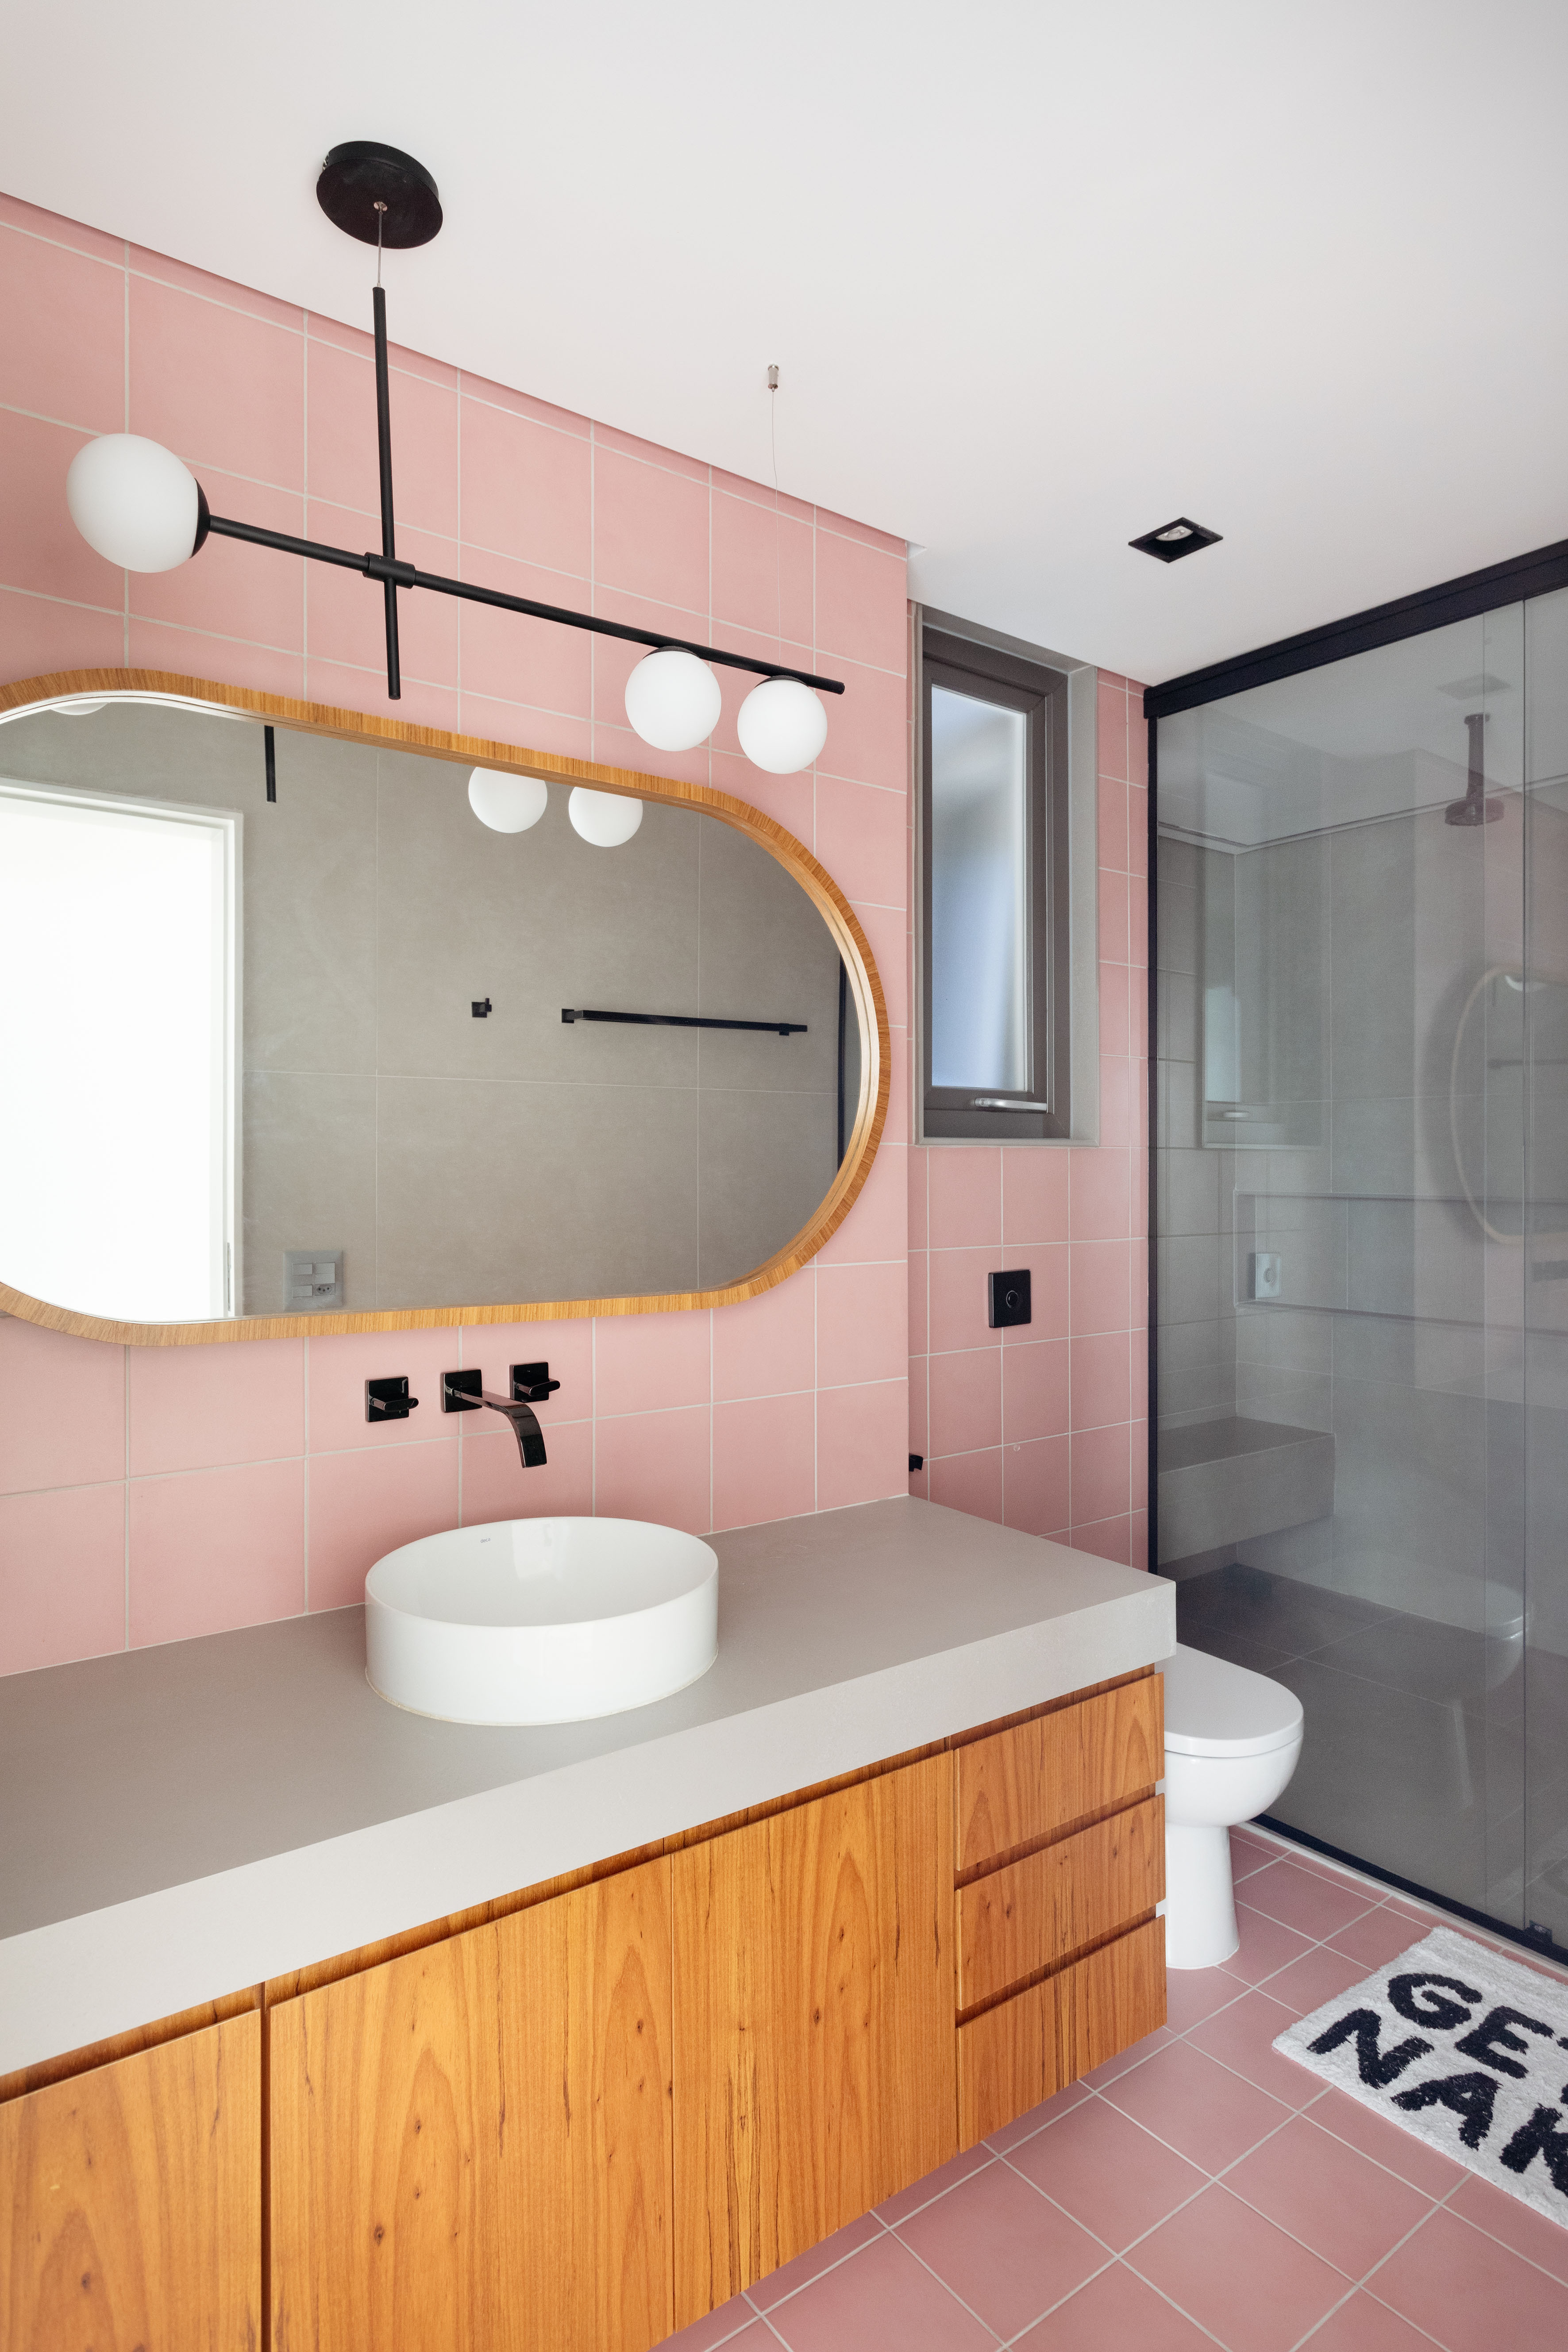 Banheiro; azulejo rosa; espelho; luminária; cuba solta